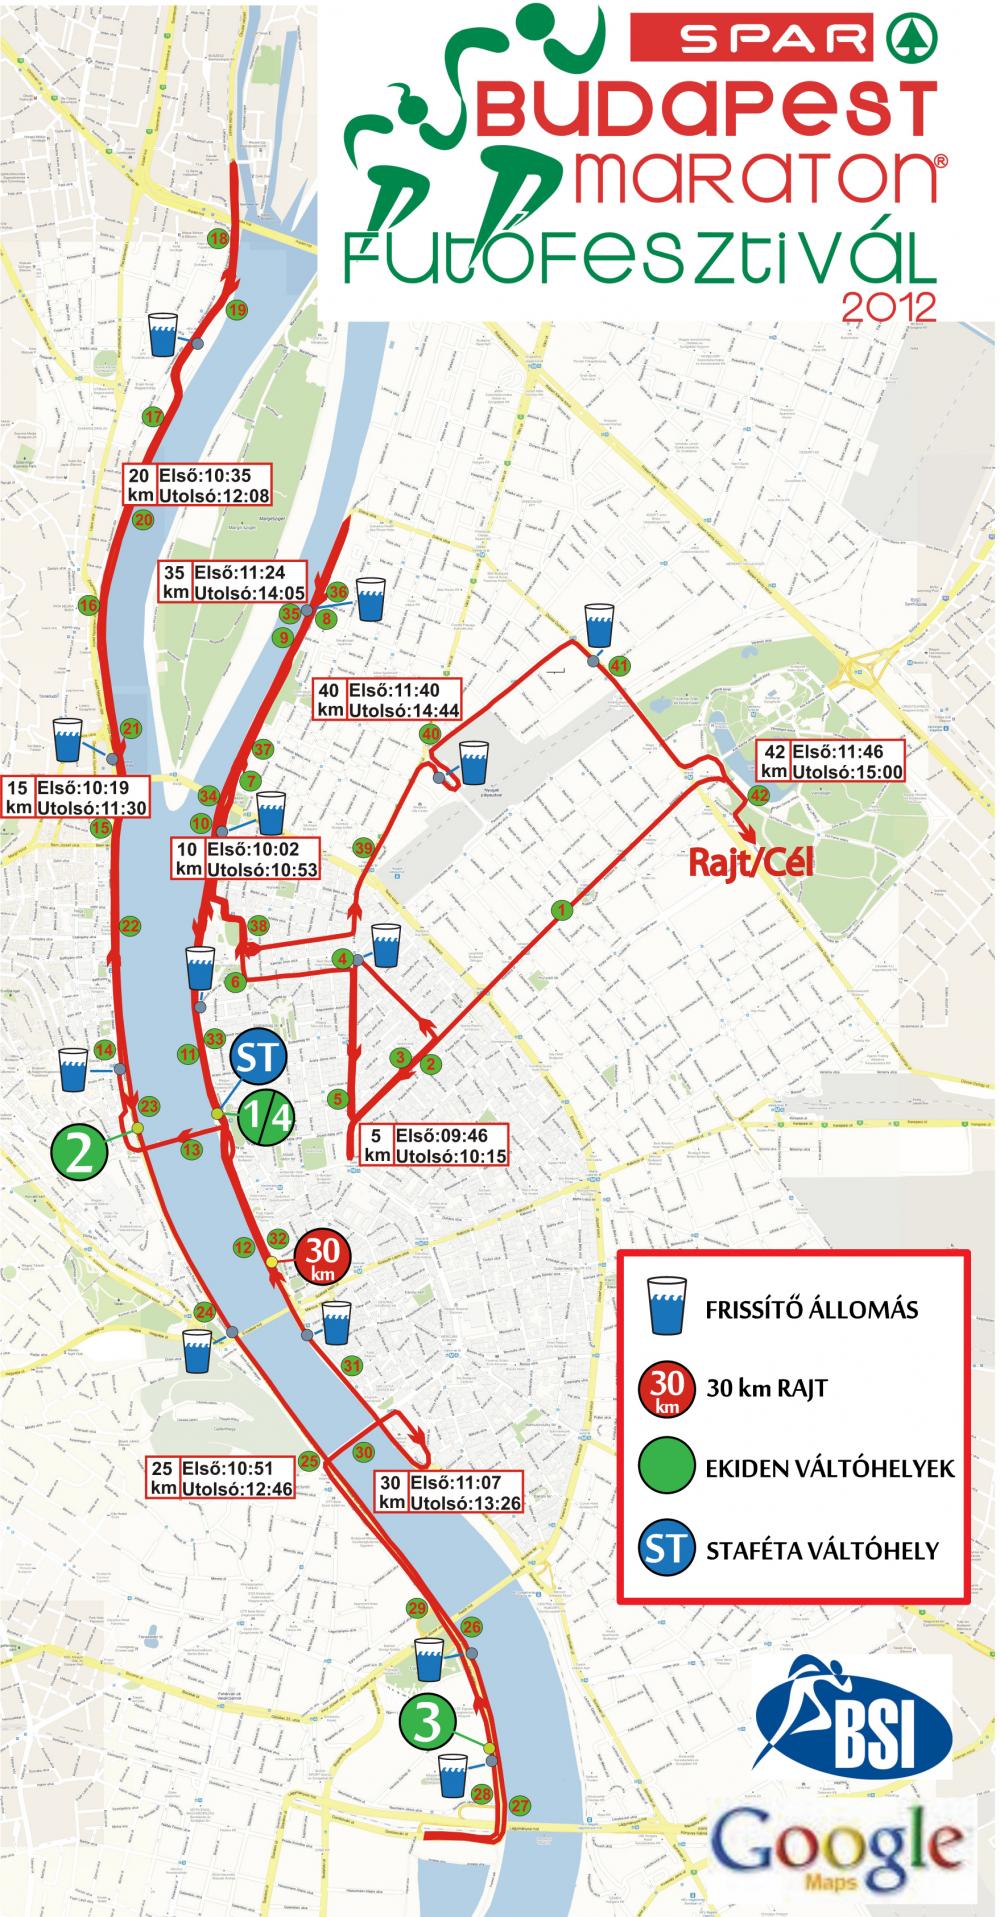 budapest térkép útvonalterv 27. Spar Budapest Maraton   térkép   Futanet.hu budapest térkép útvonalterv